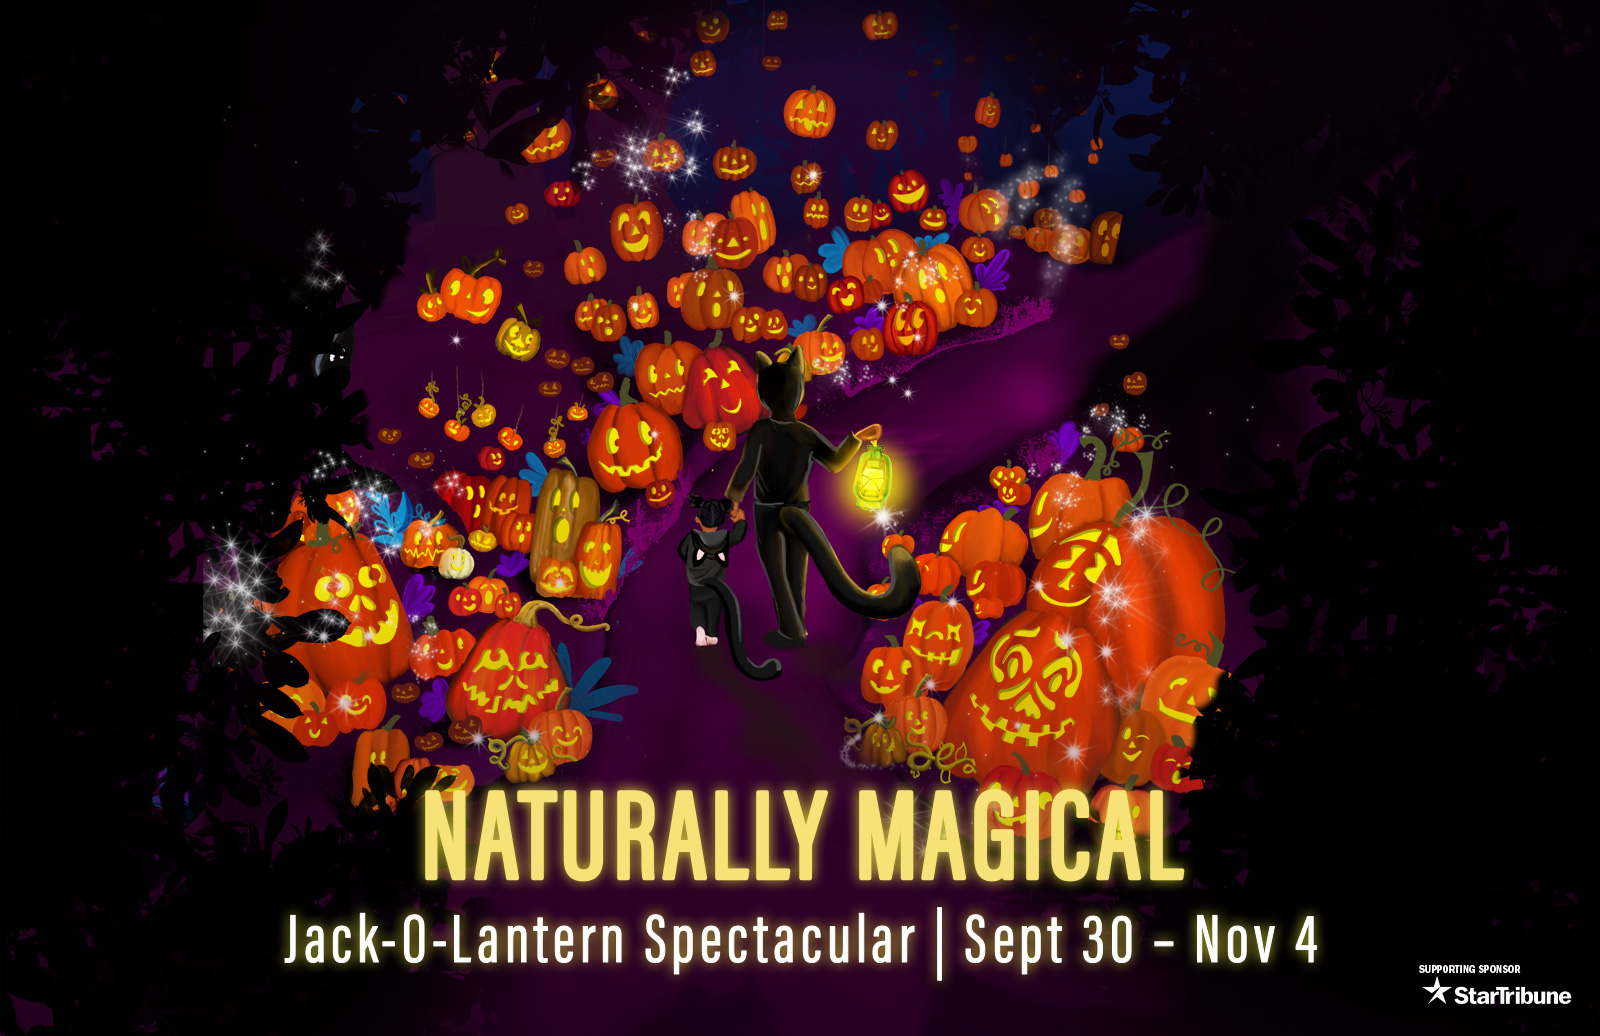 Naturally Magical Jack-o-lantern spectacular